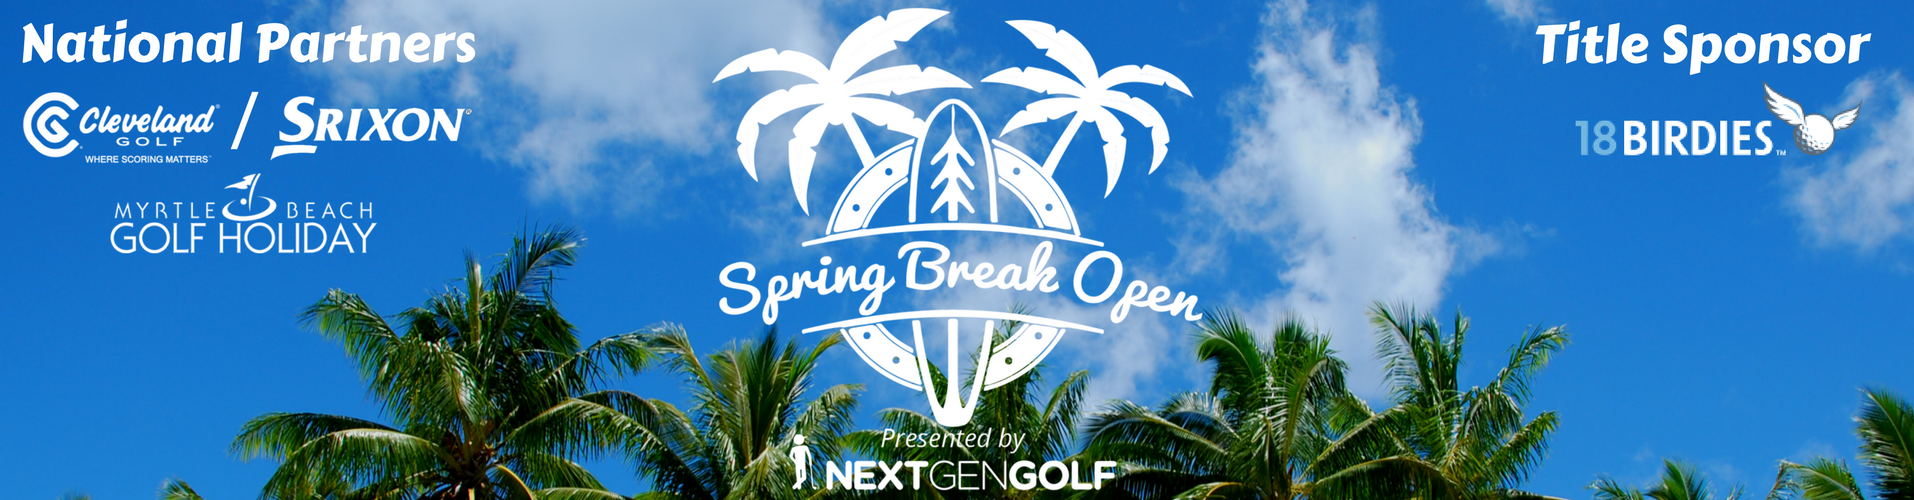 Spring Break Open 2018 Nextgengolf